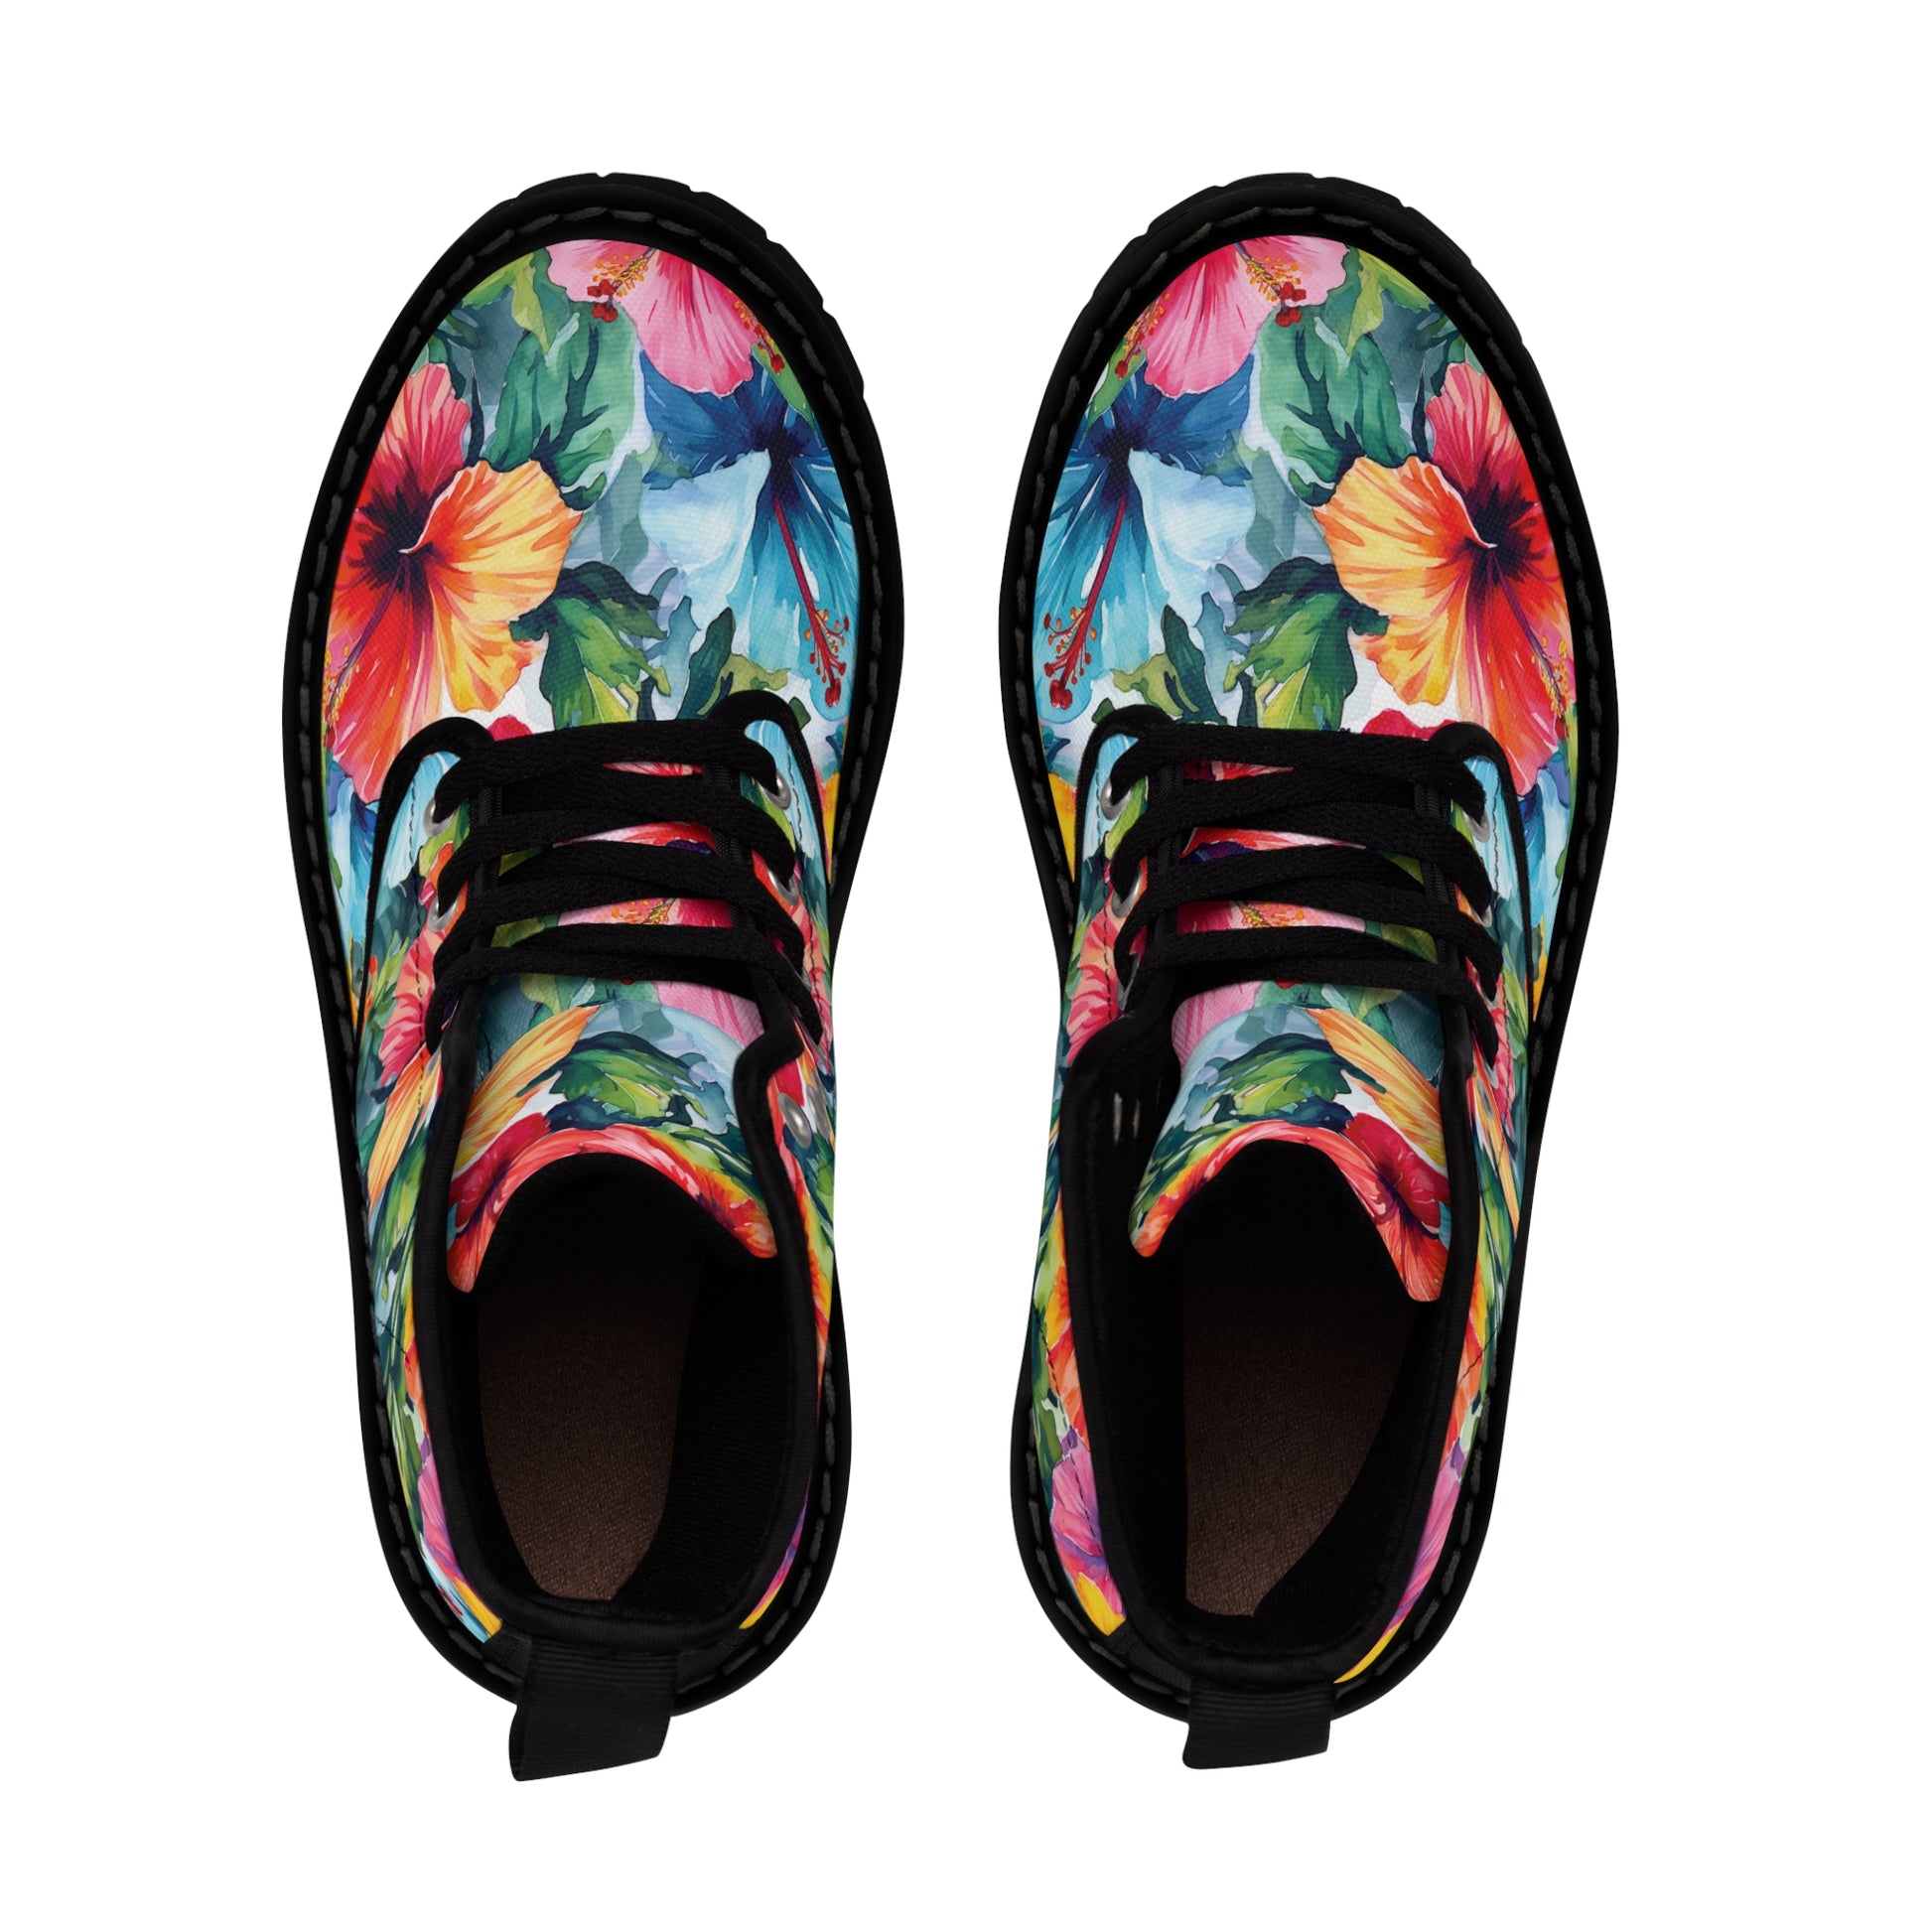 Watercolor Hibiscus (Light #4) Women's Canvas Boots (Black Soles) by Studio Ten Design